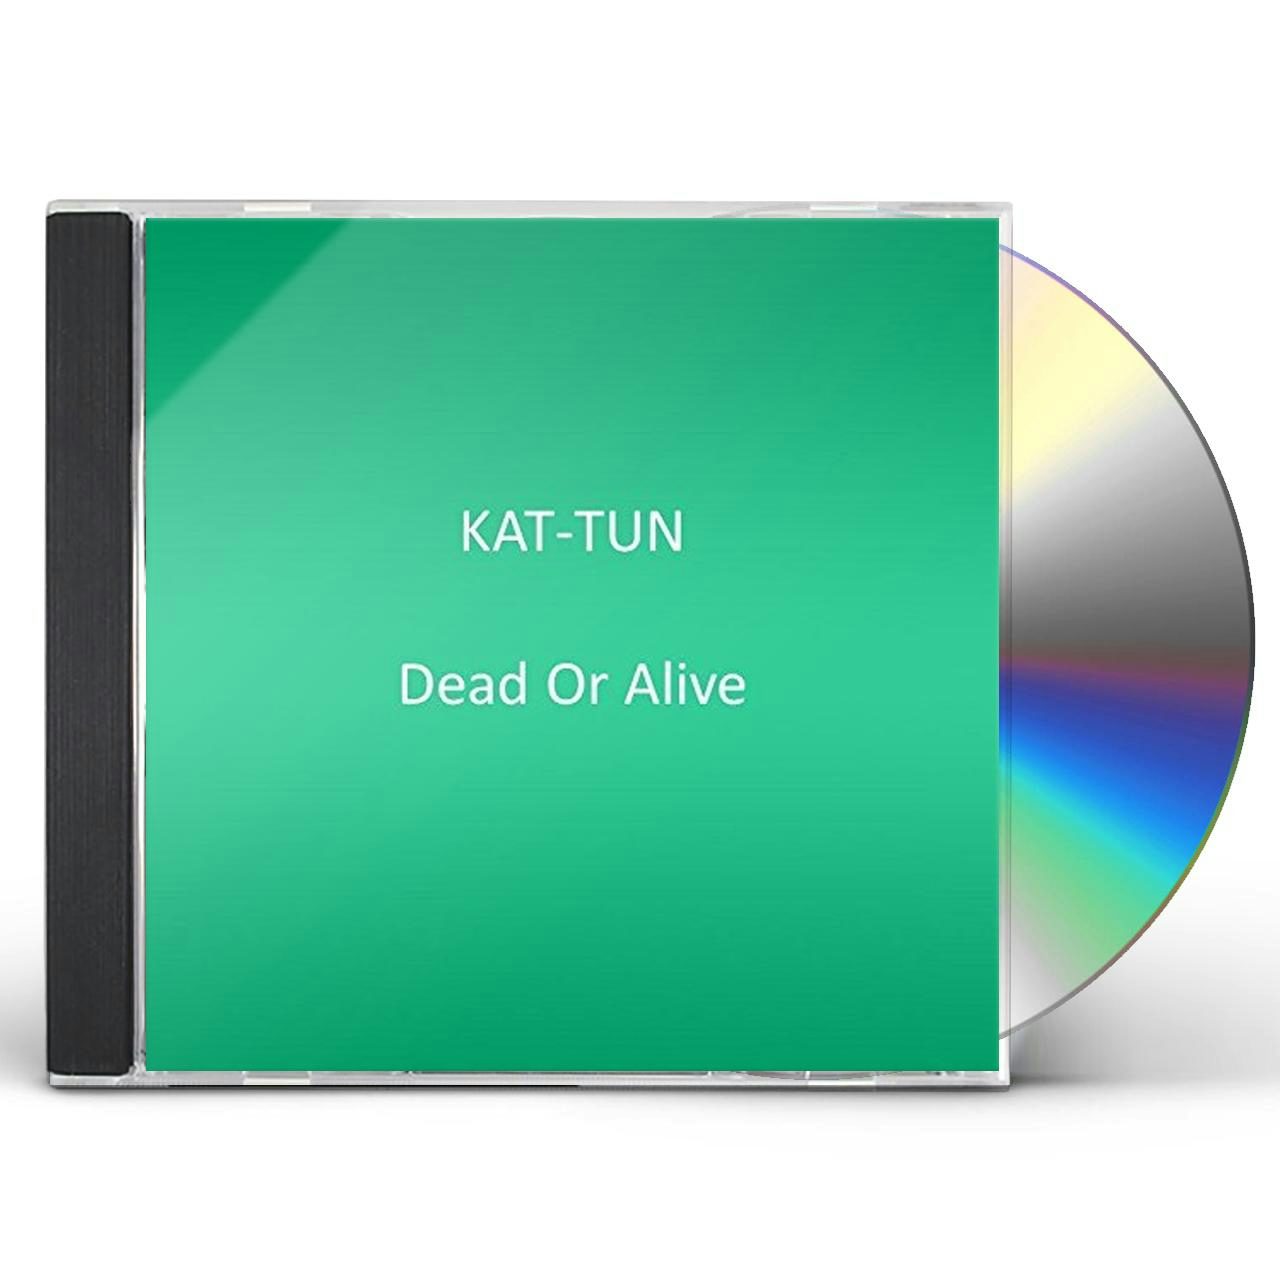 KAT-TUN Store: Official Merch & Vinyl